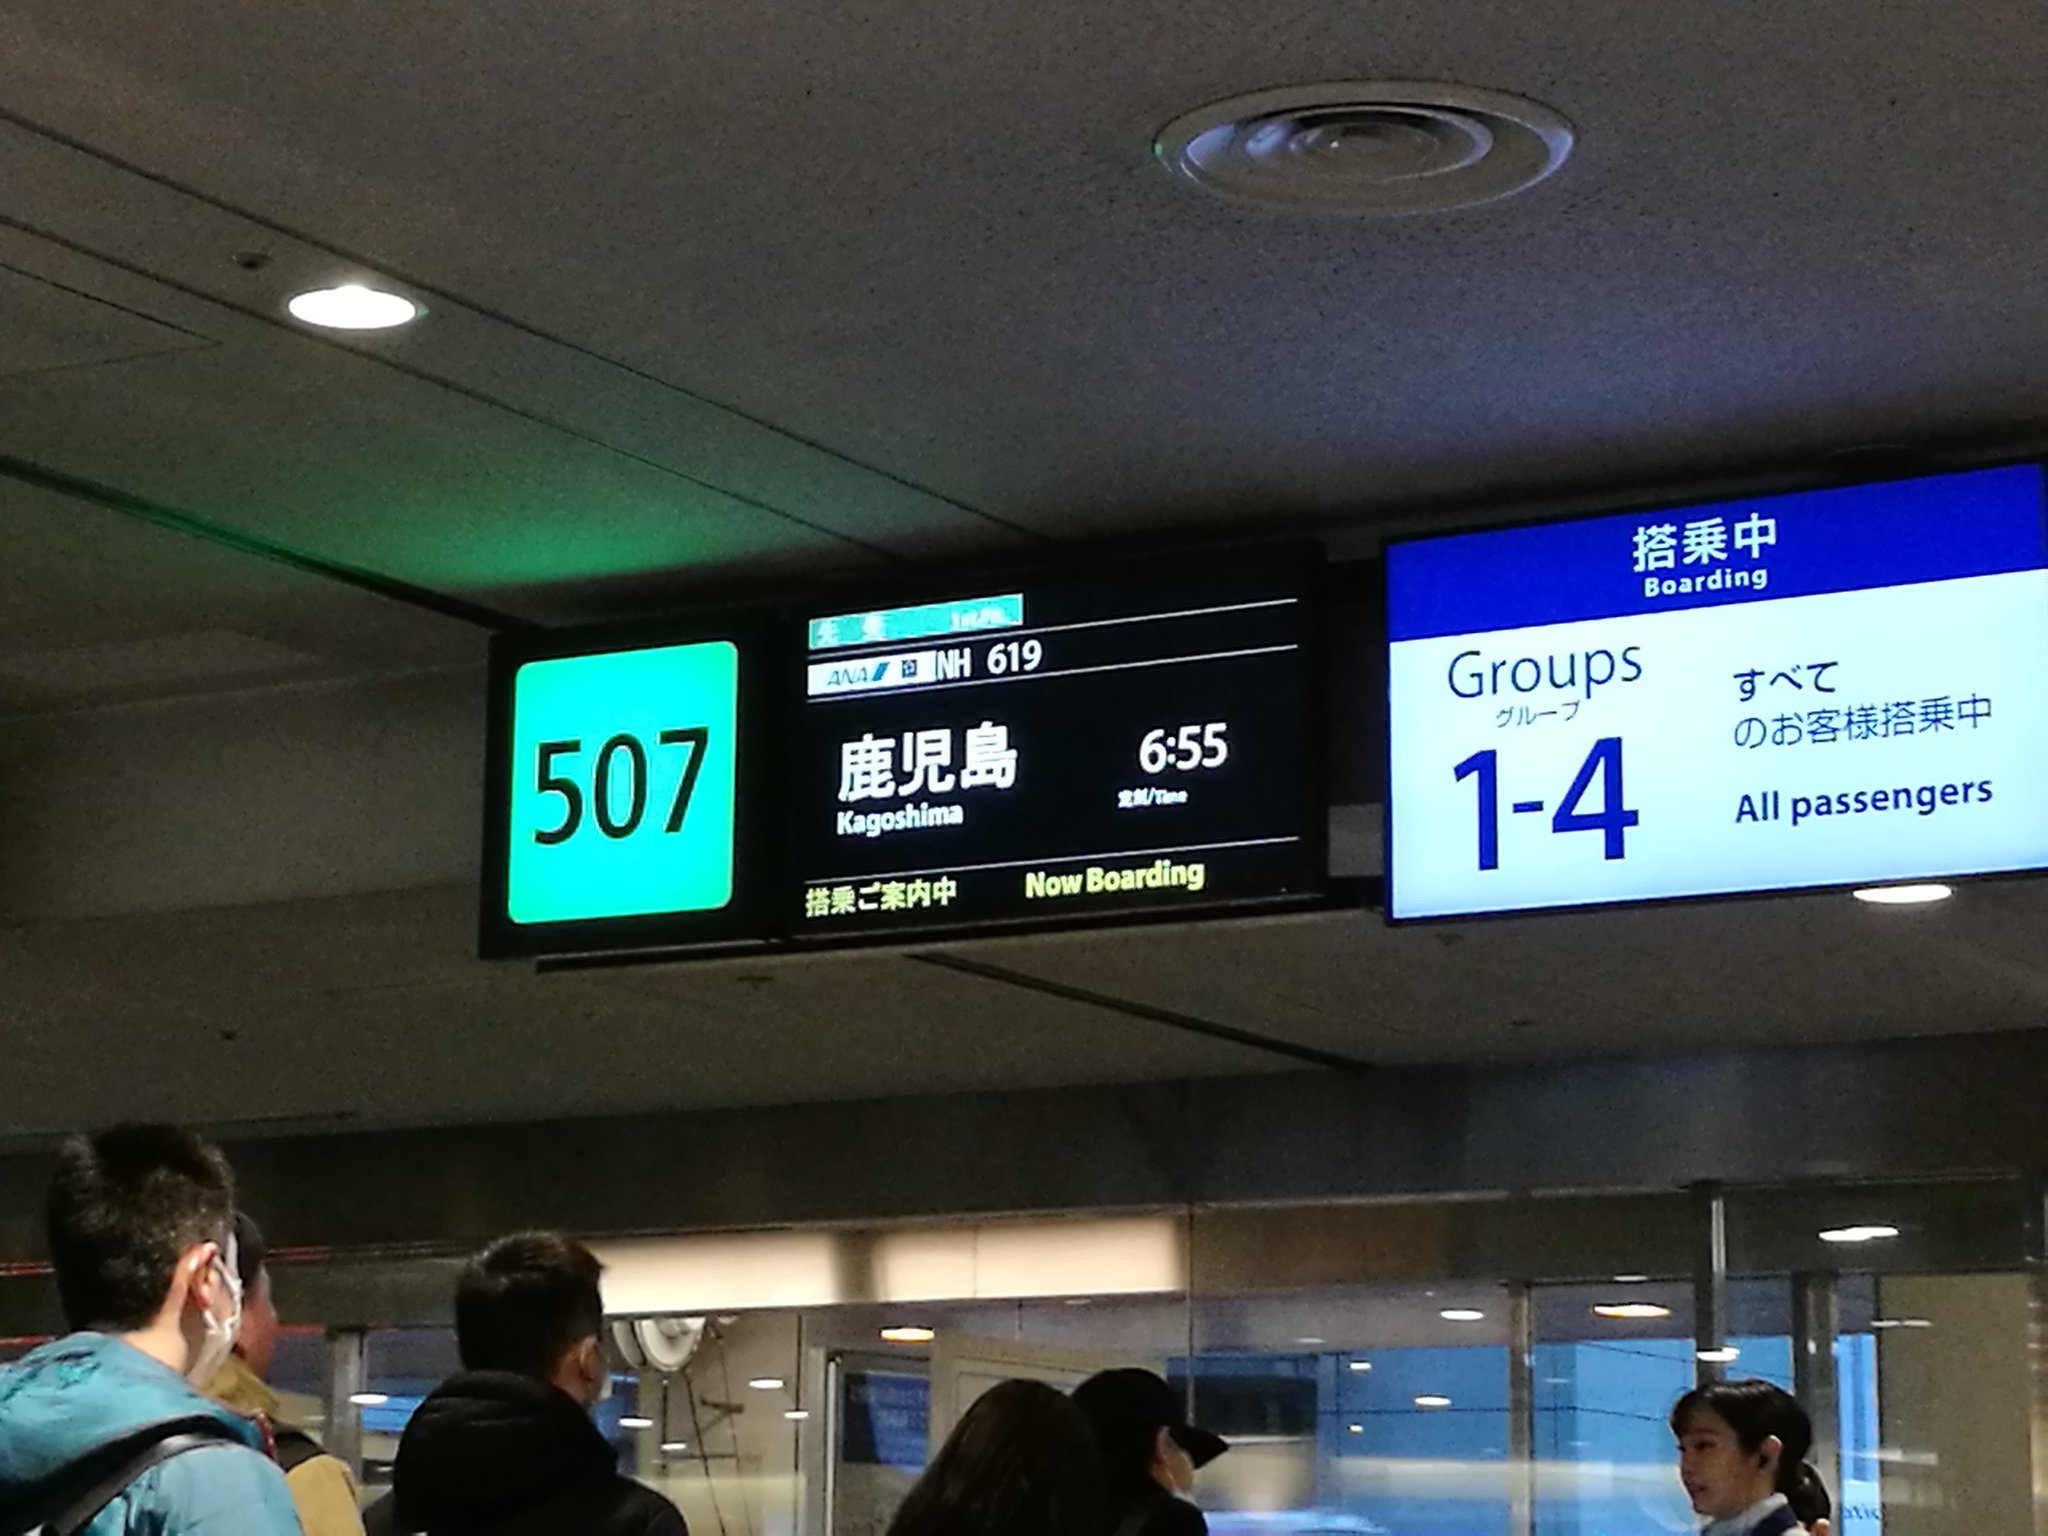 画像 早朝から羽田空港は人がたくさん 空港職員さんもcaさんも朝早くから笑顔をありがとう めっちゃ幸せな気分になりました この笑顔はlccではないかも 脱帽 行って参 まとめダネ